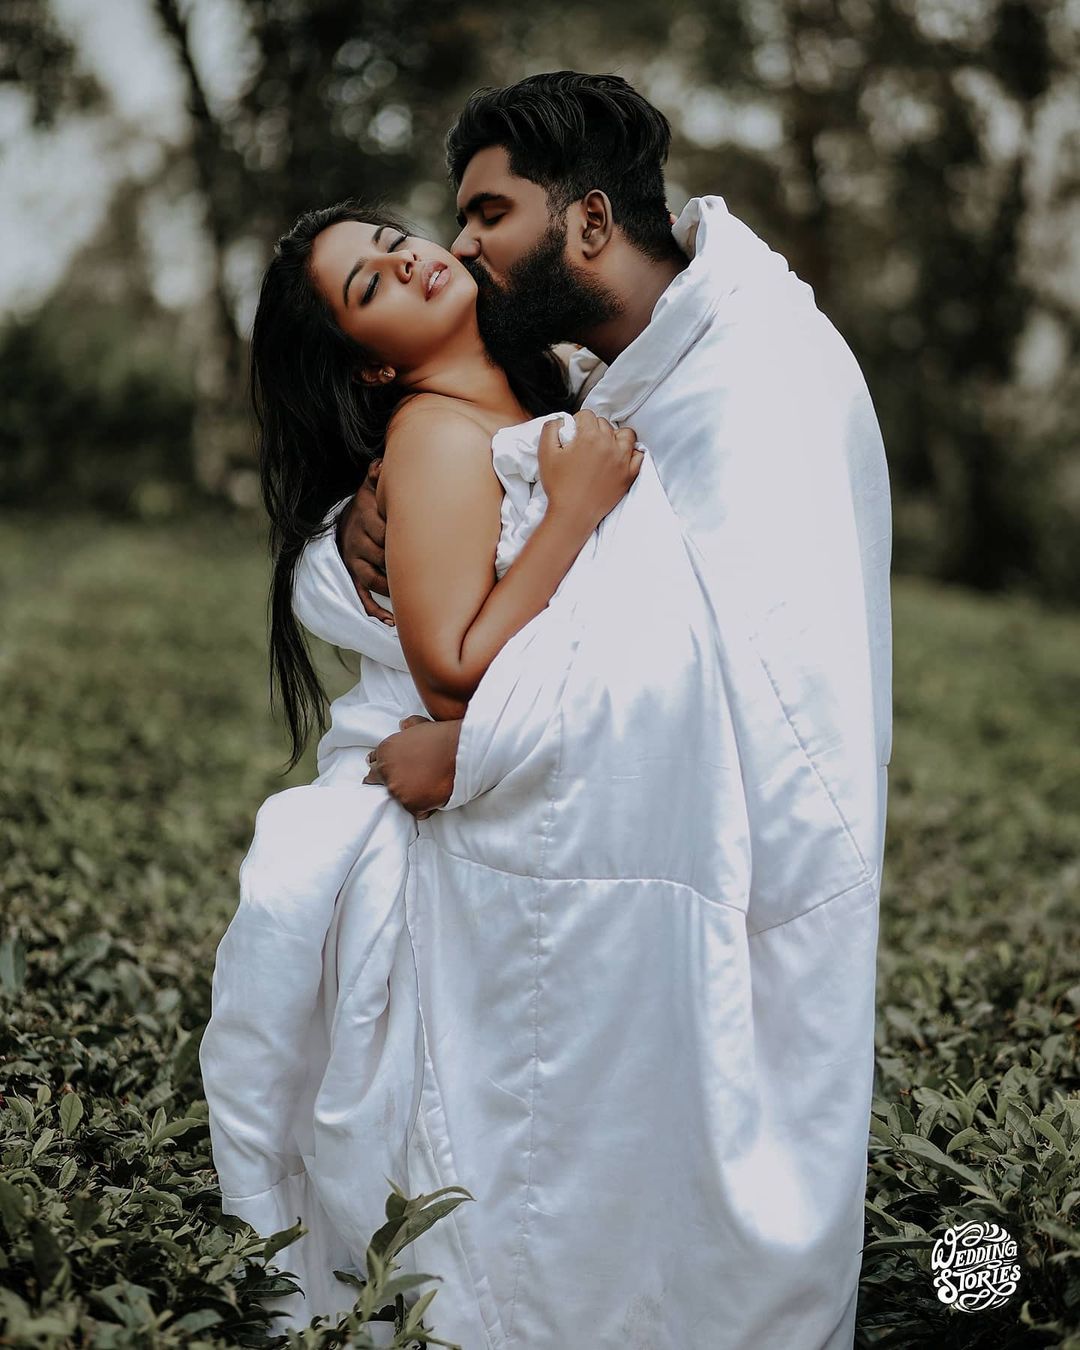 Post-Wedding Photoshoot Ideas to Create Breath-Taking Photos